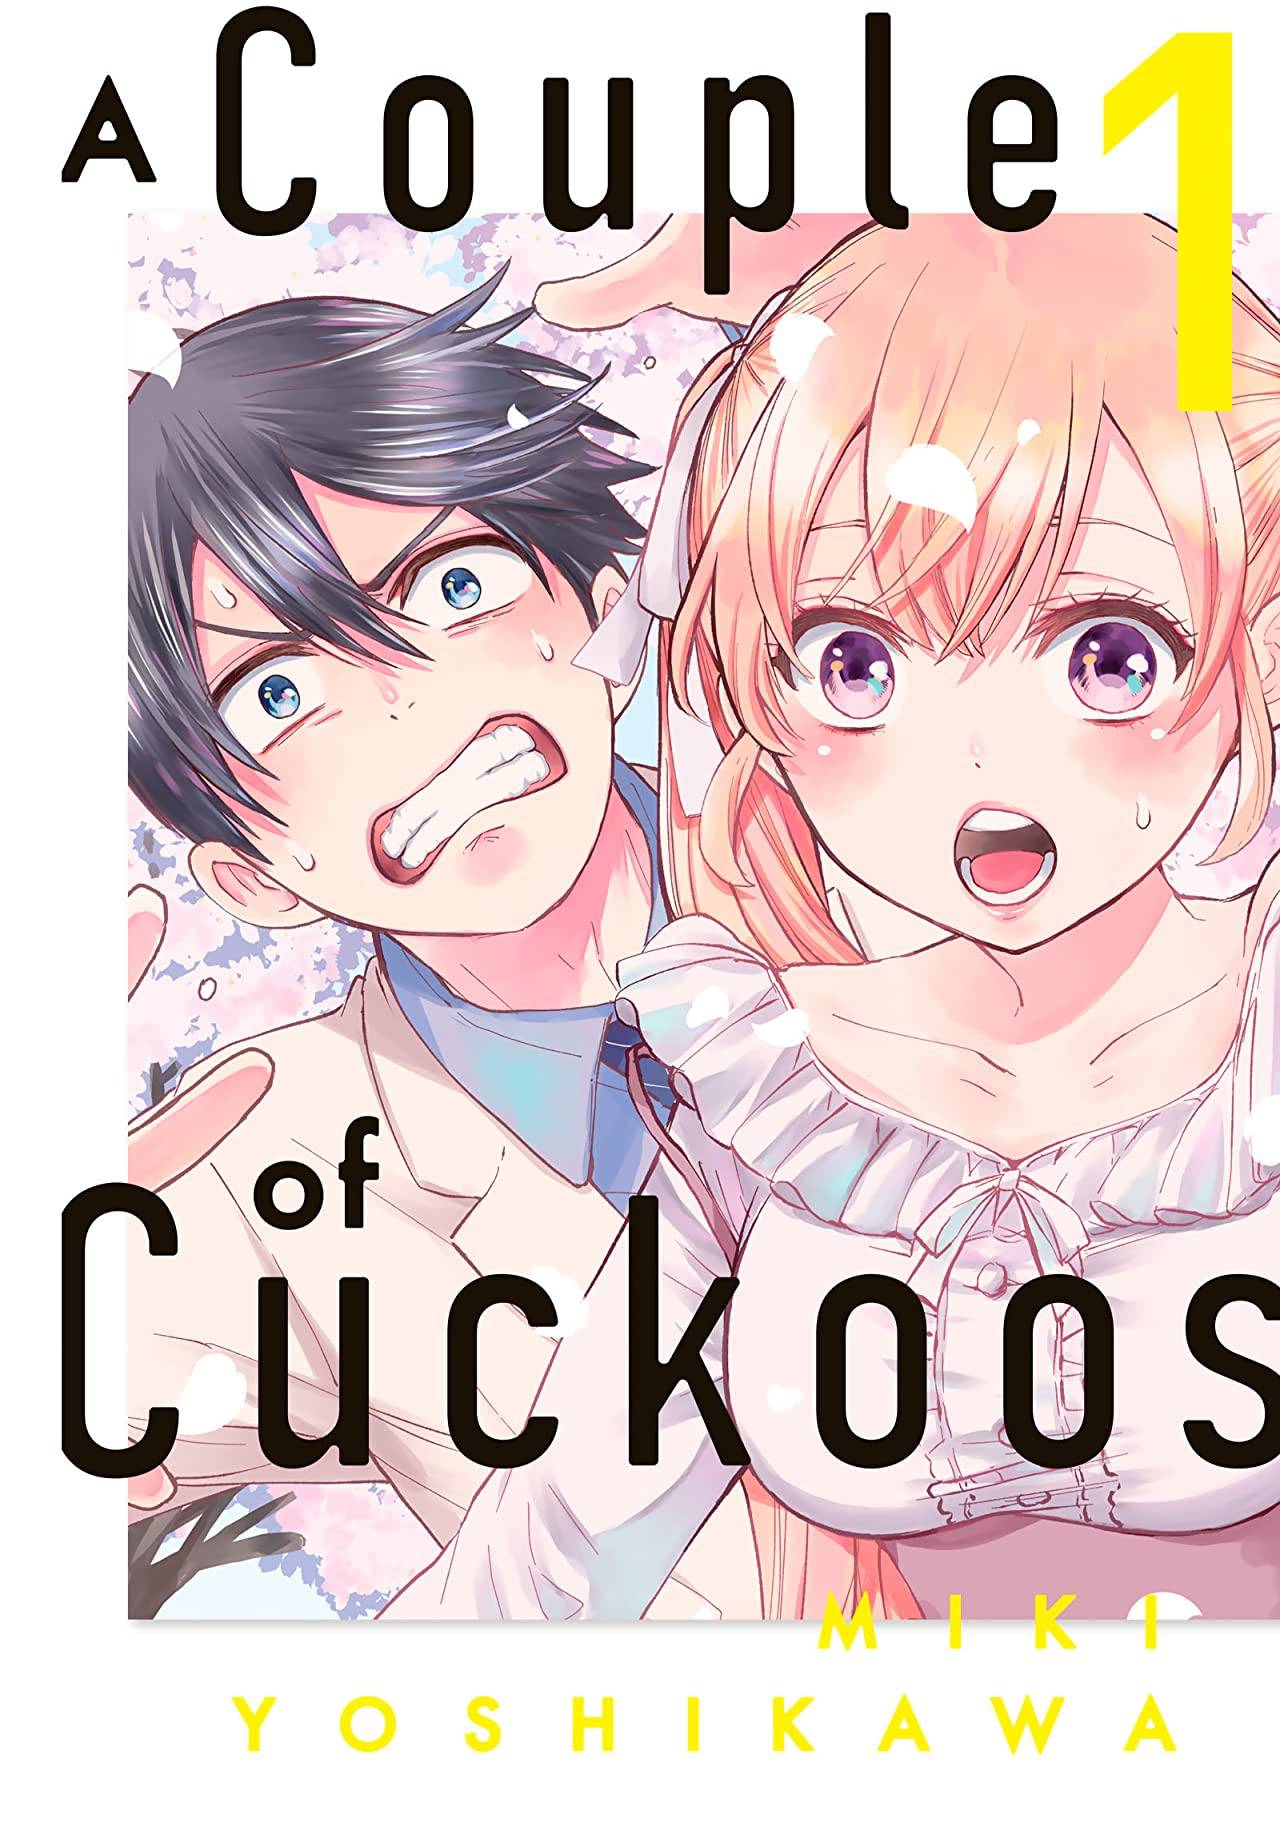 El manga A Couple of Cuckoos, tendrá su anime en el 2022 1